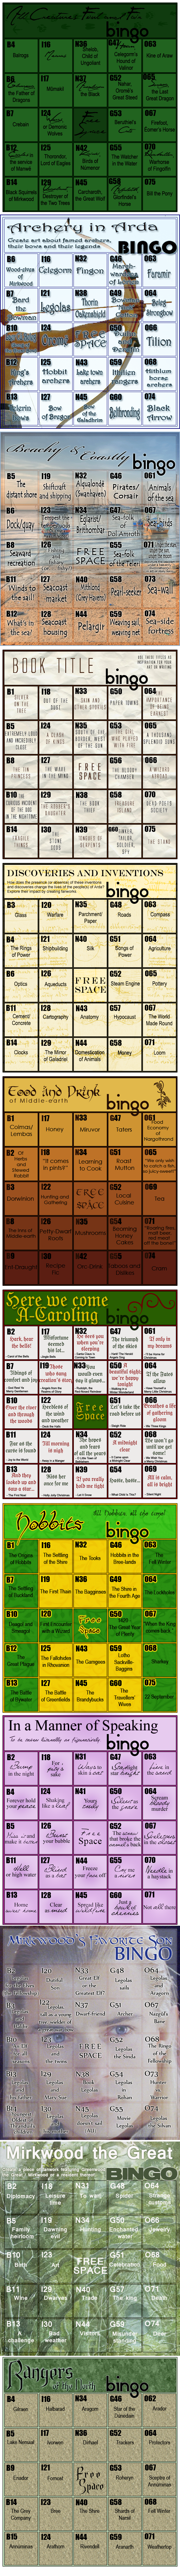 Kelly's Bingo Cards